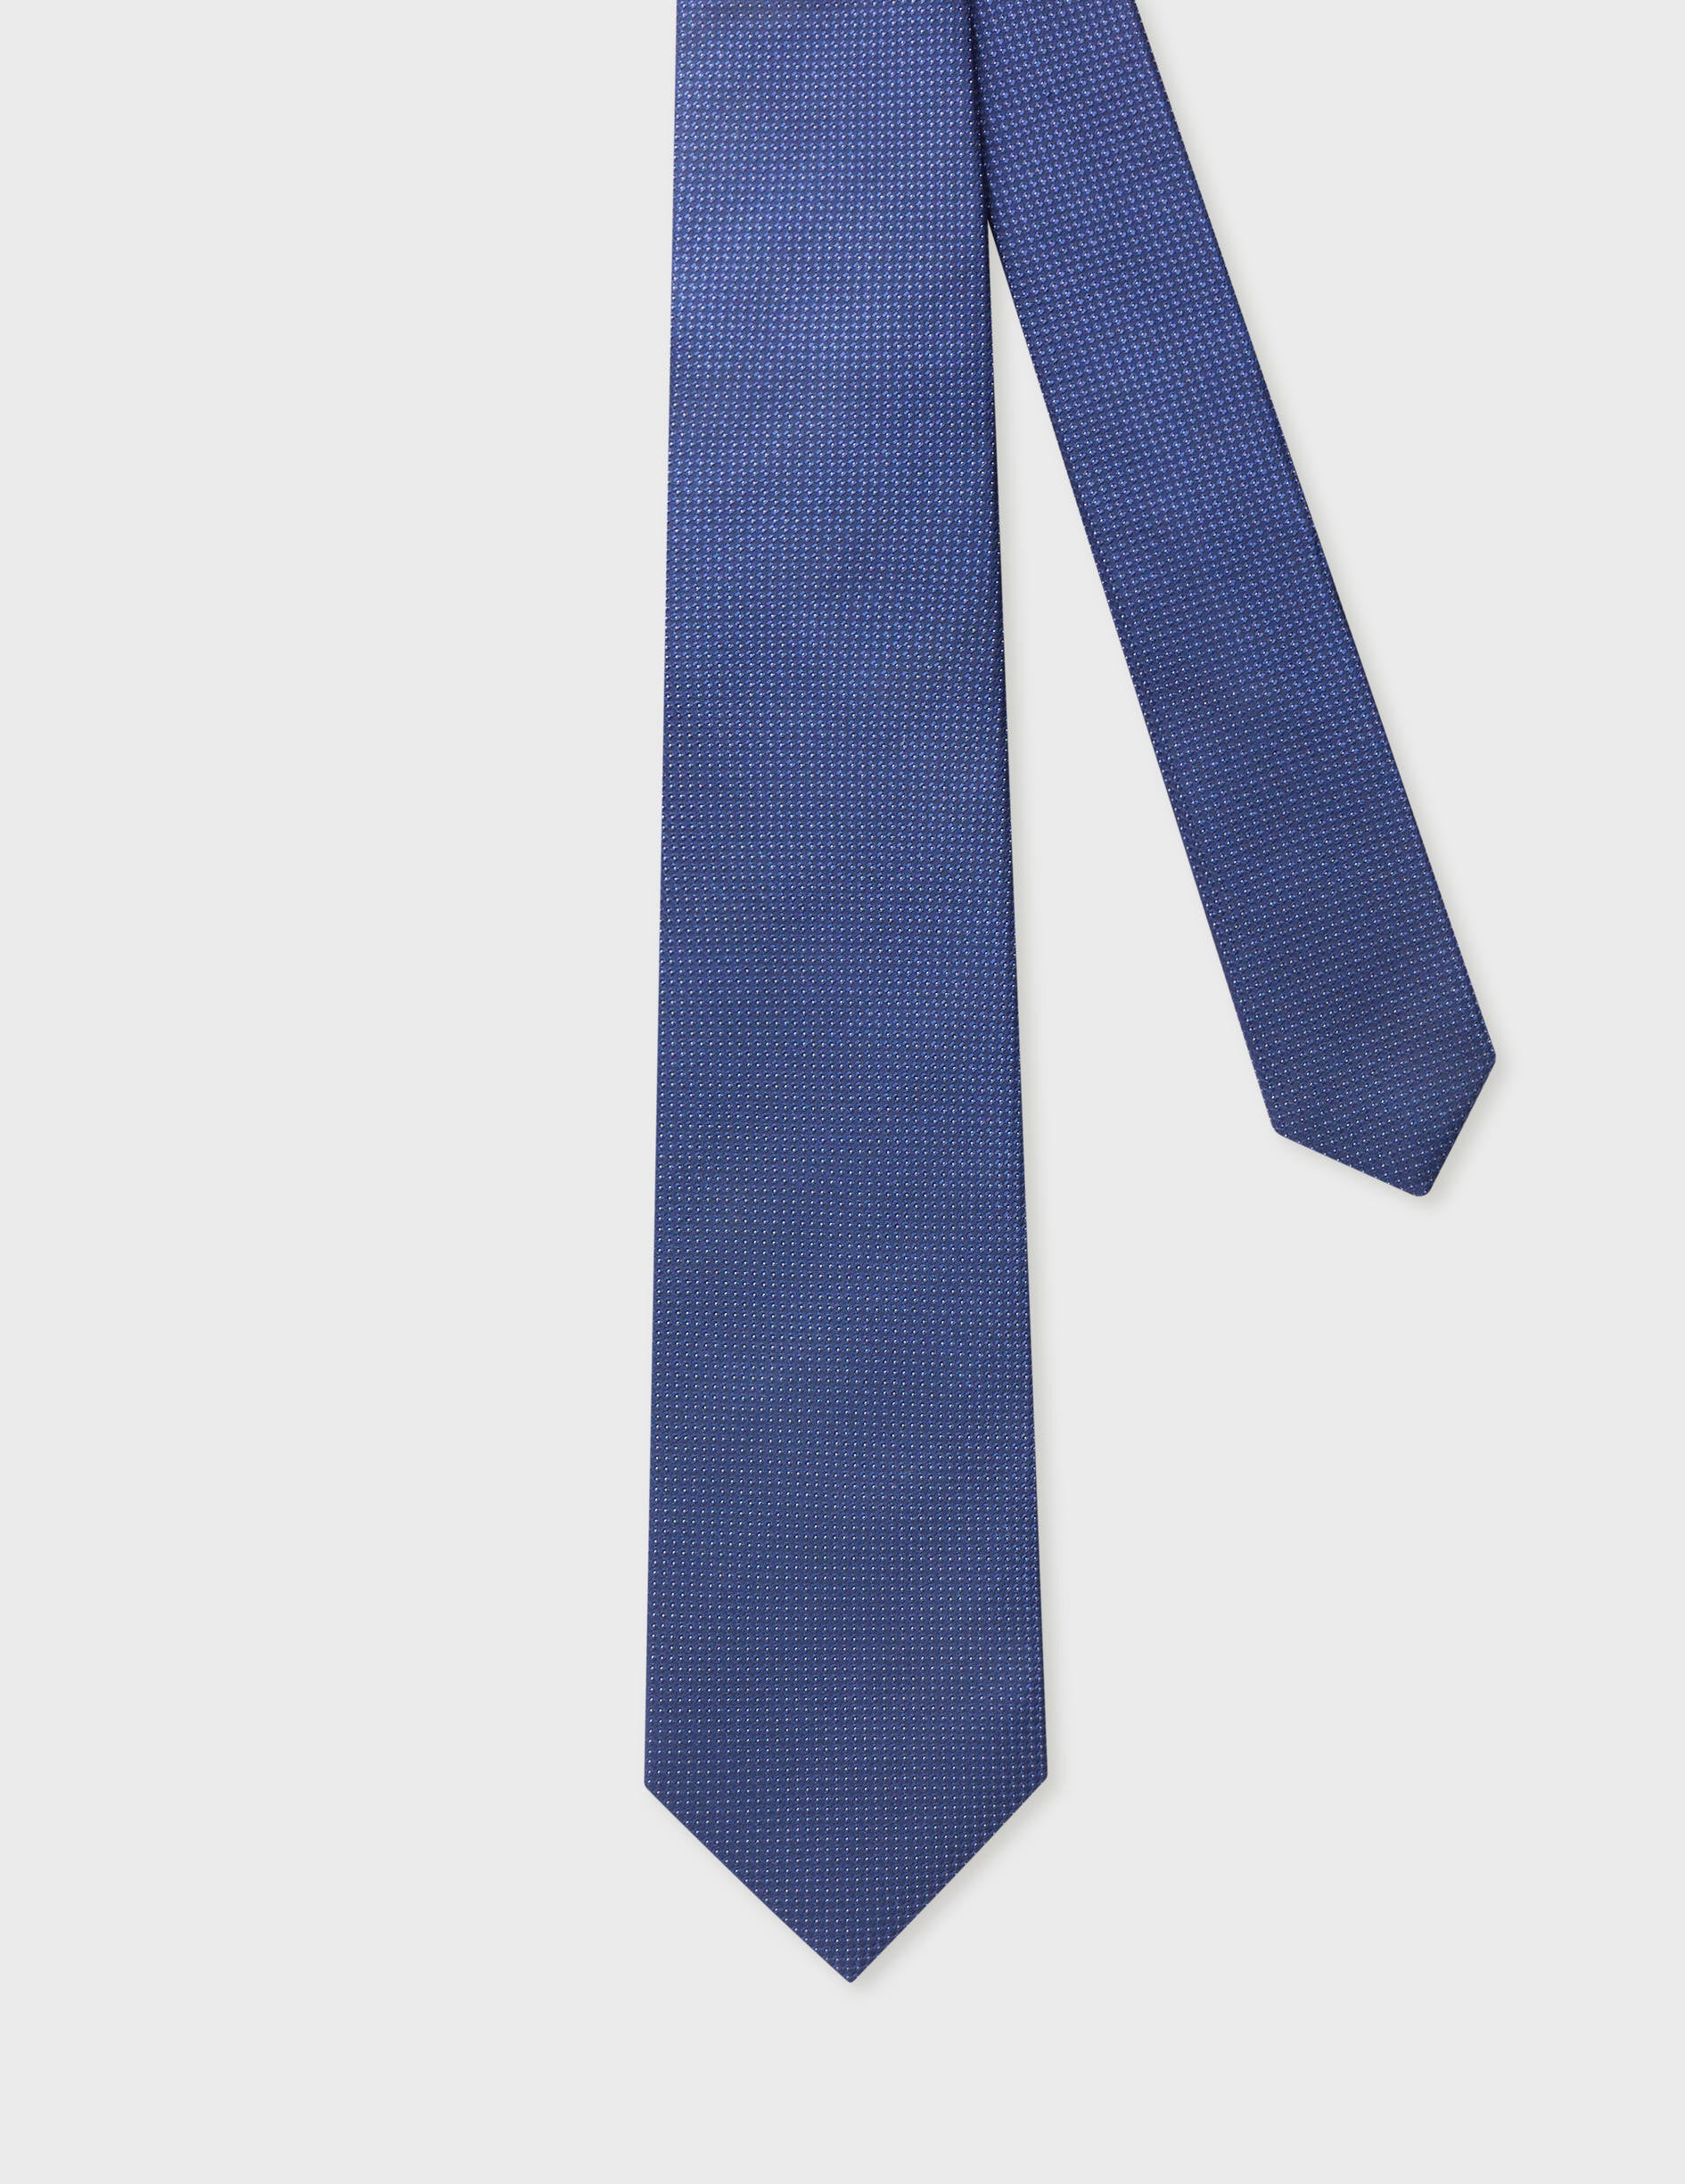 Cravate 7 plis en soie marine à motifs